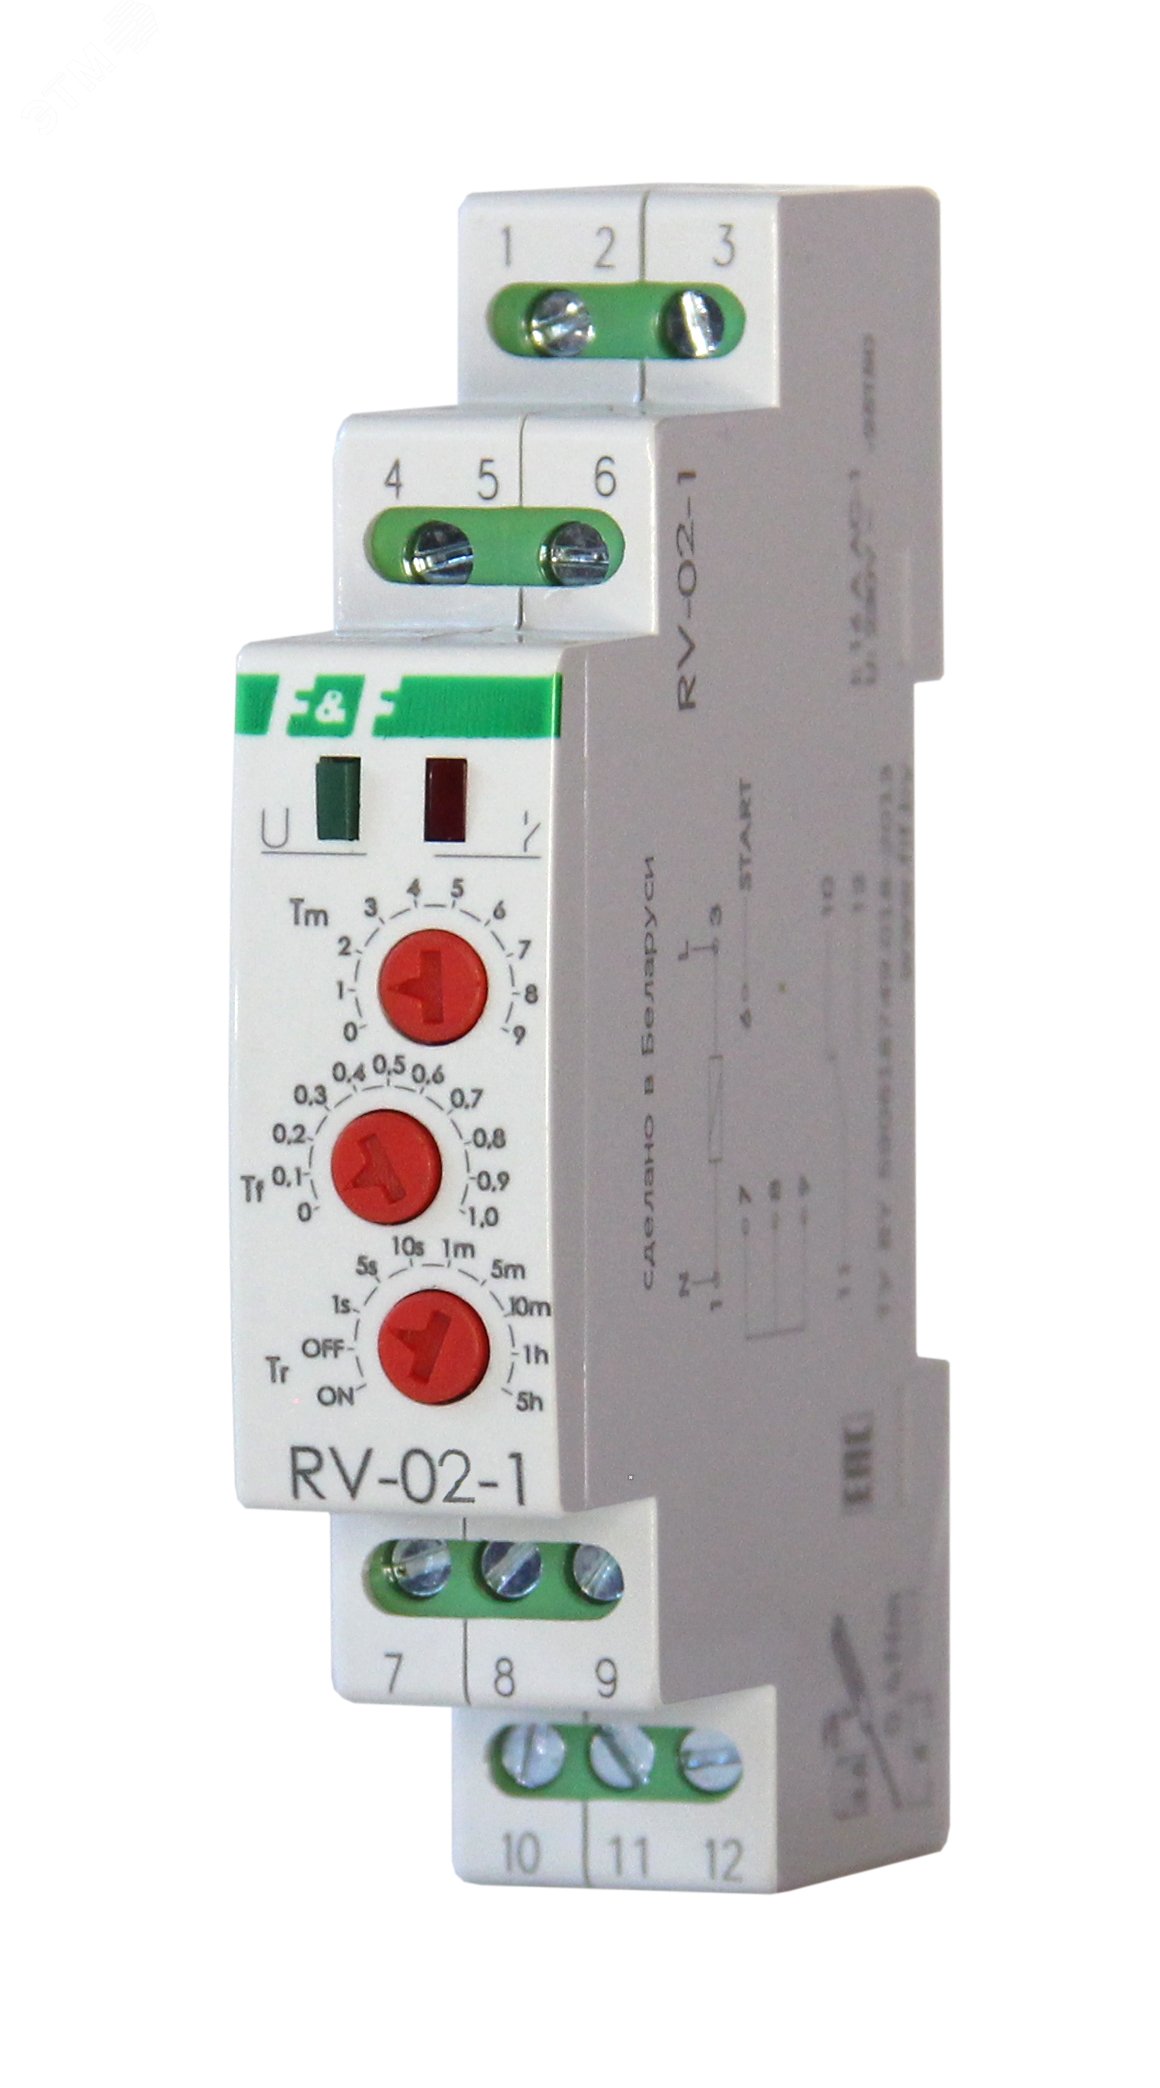 Реле контроля фаз f & f CKF-318-1. Реле тока f&f EPP-619-1, EA03.004.005. Реле контроля фаз CZF-B (3х400/230+n 8а 1перекл. Ip20 монтаж на din-рейке) 294926. Реле контроля наличия и чередования фаз CKF-318-1. F f автоматика